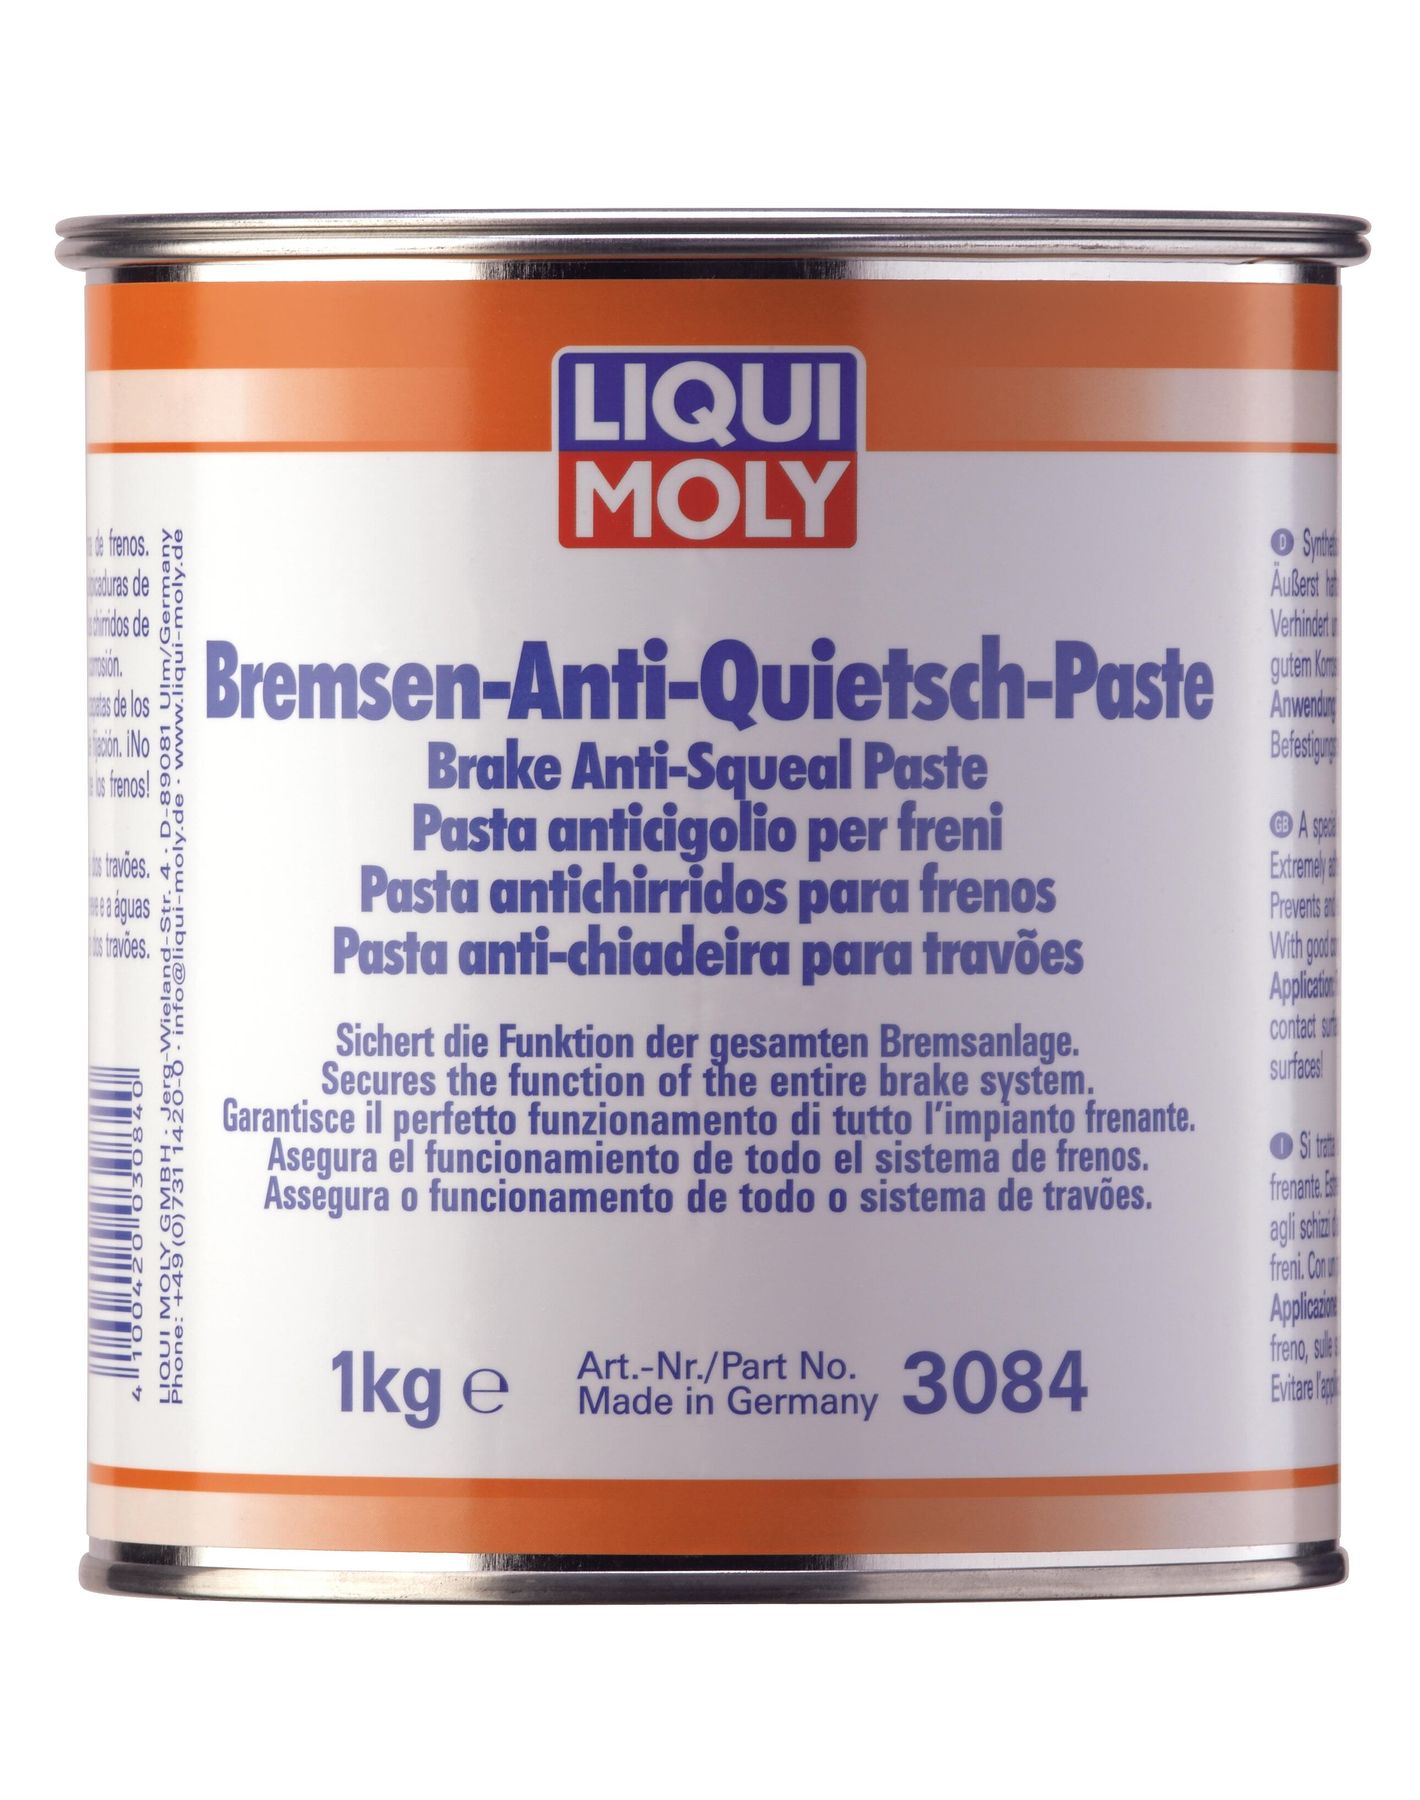 Liqui Moly Bremsen-Anti-Quietsch-Paste - для тормозов, 1кг - LIQUI MOLY, Официальный интернет-магазин